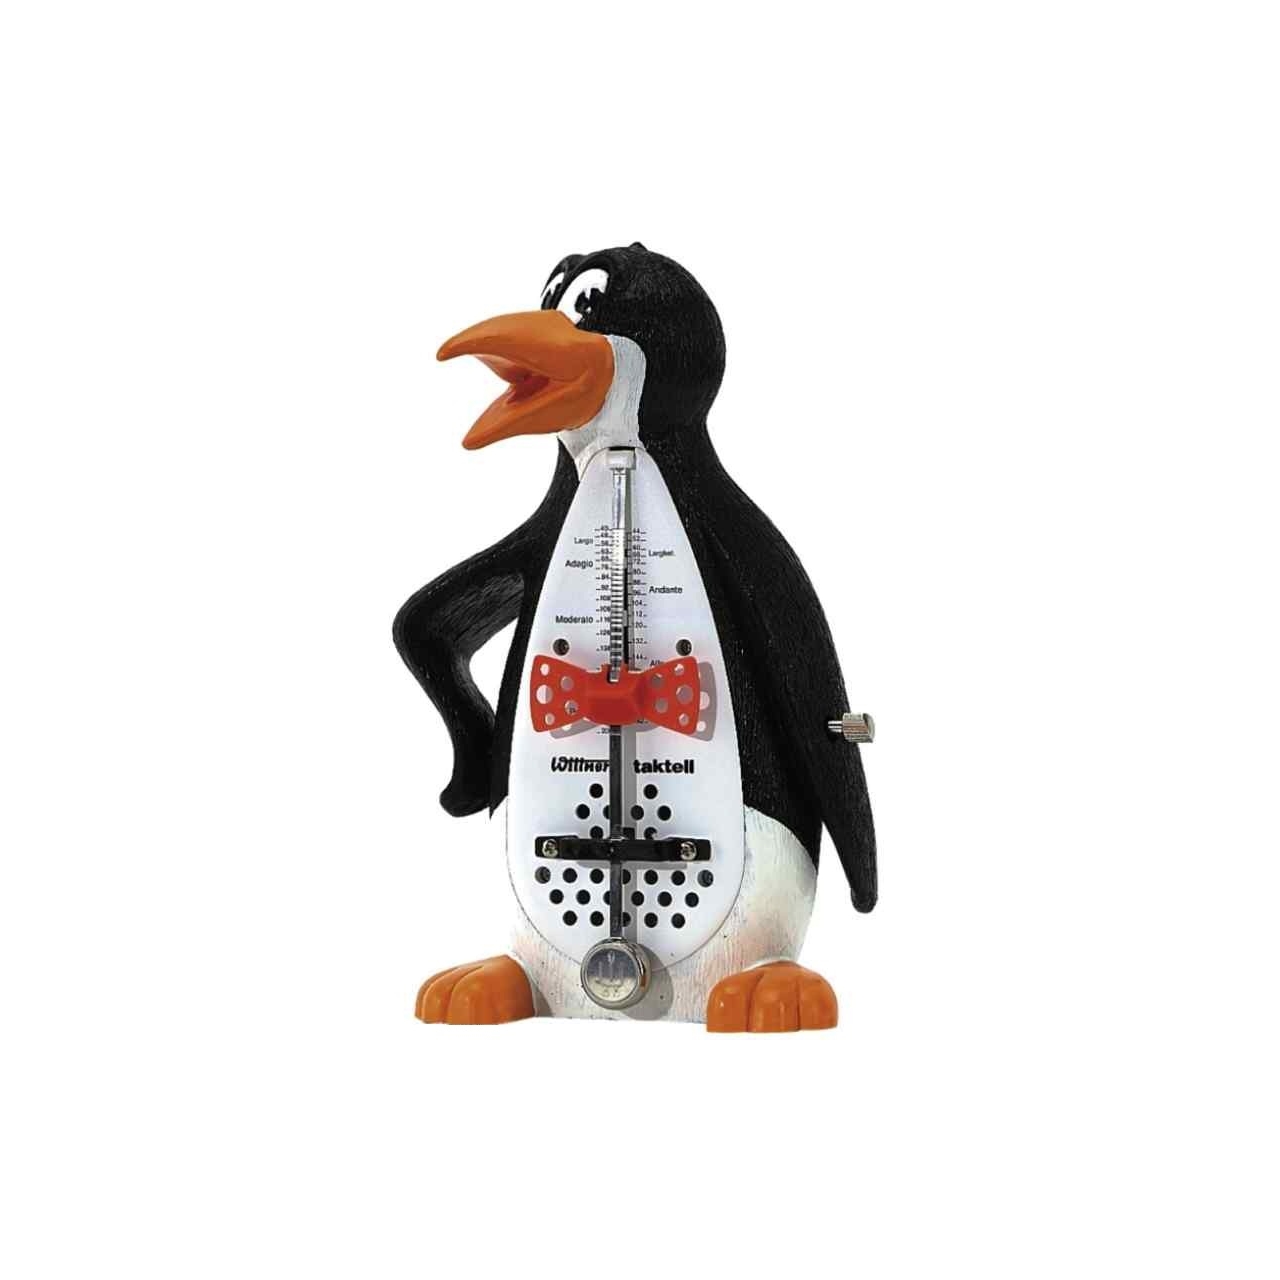 Witt.Taktell Pinguin